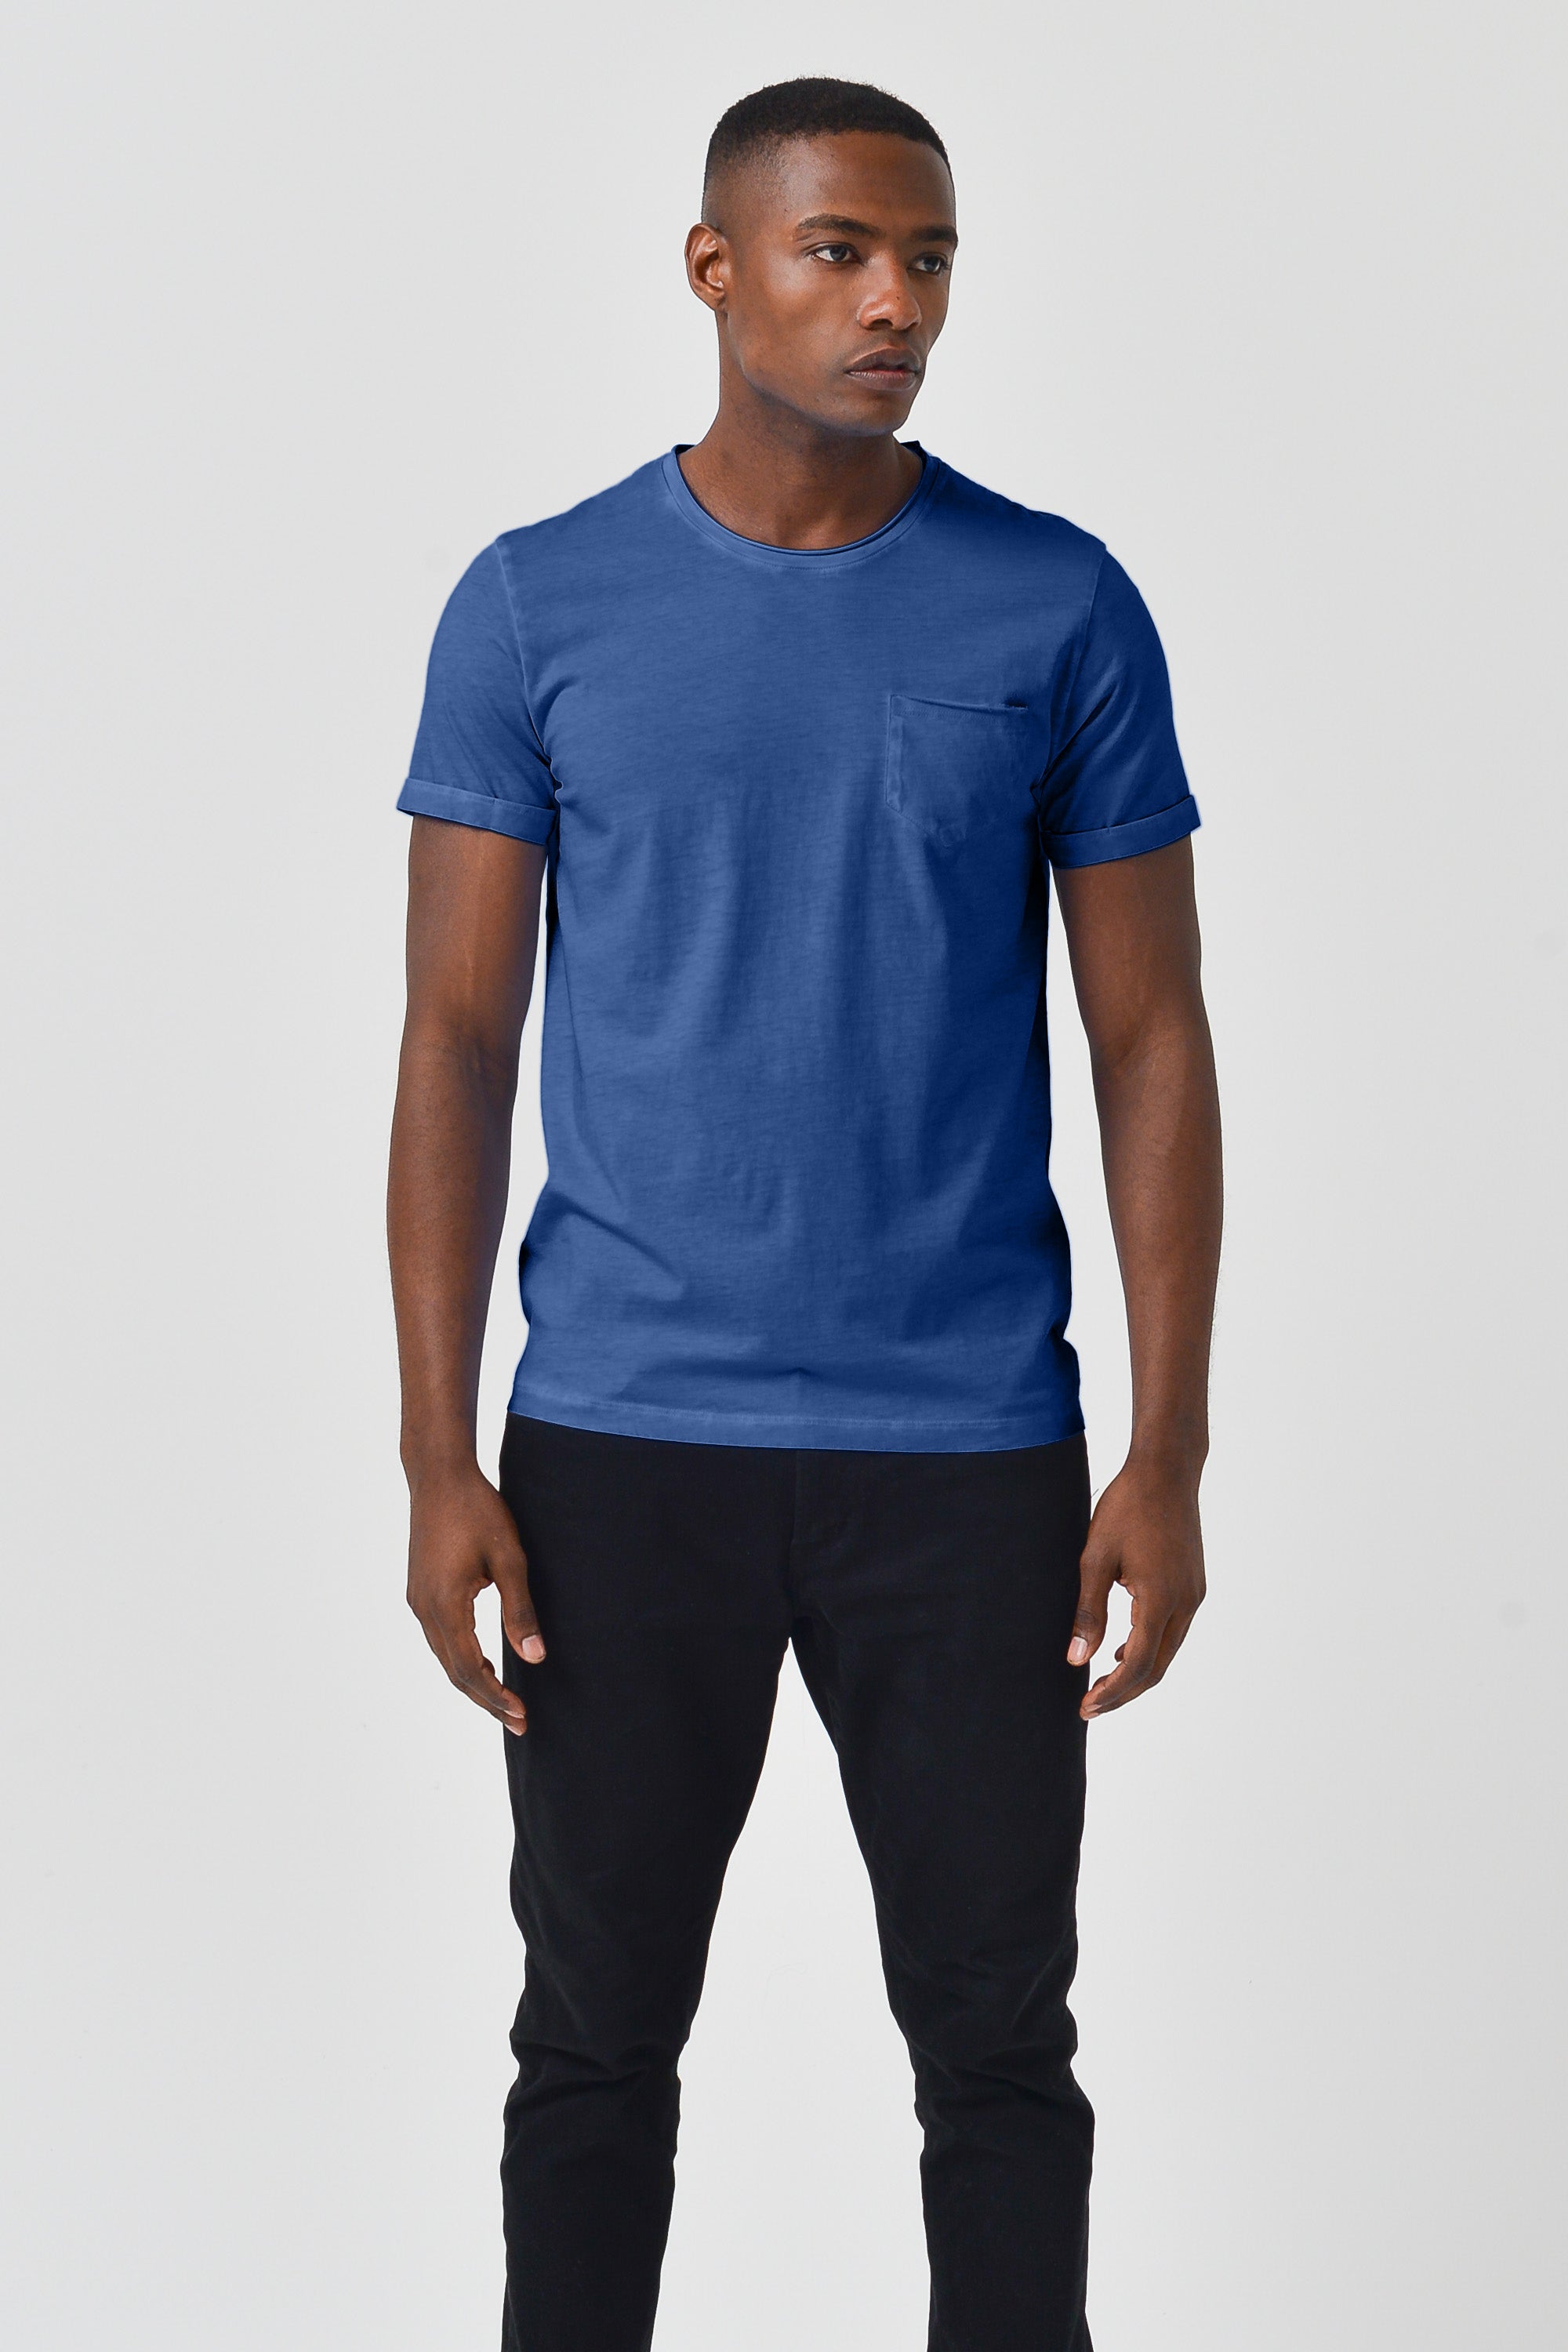 Plain Pocket Cotton T-Shirt - Pacific